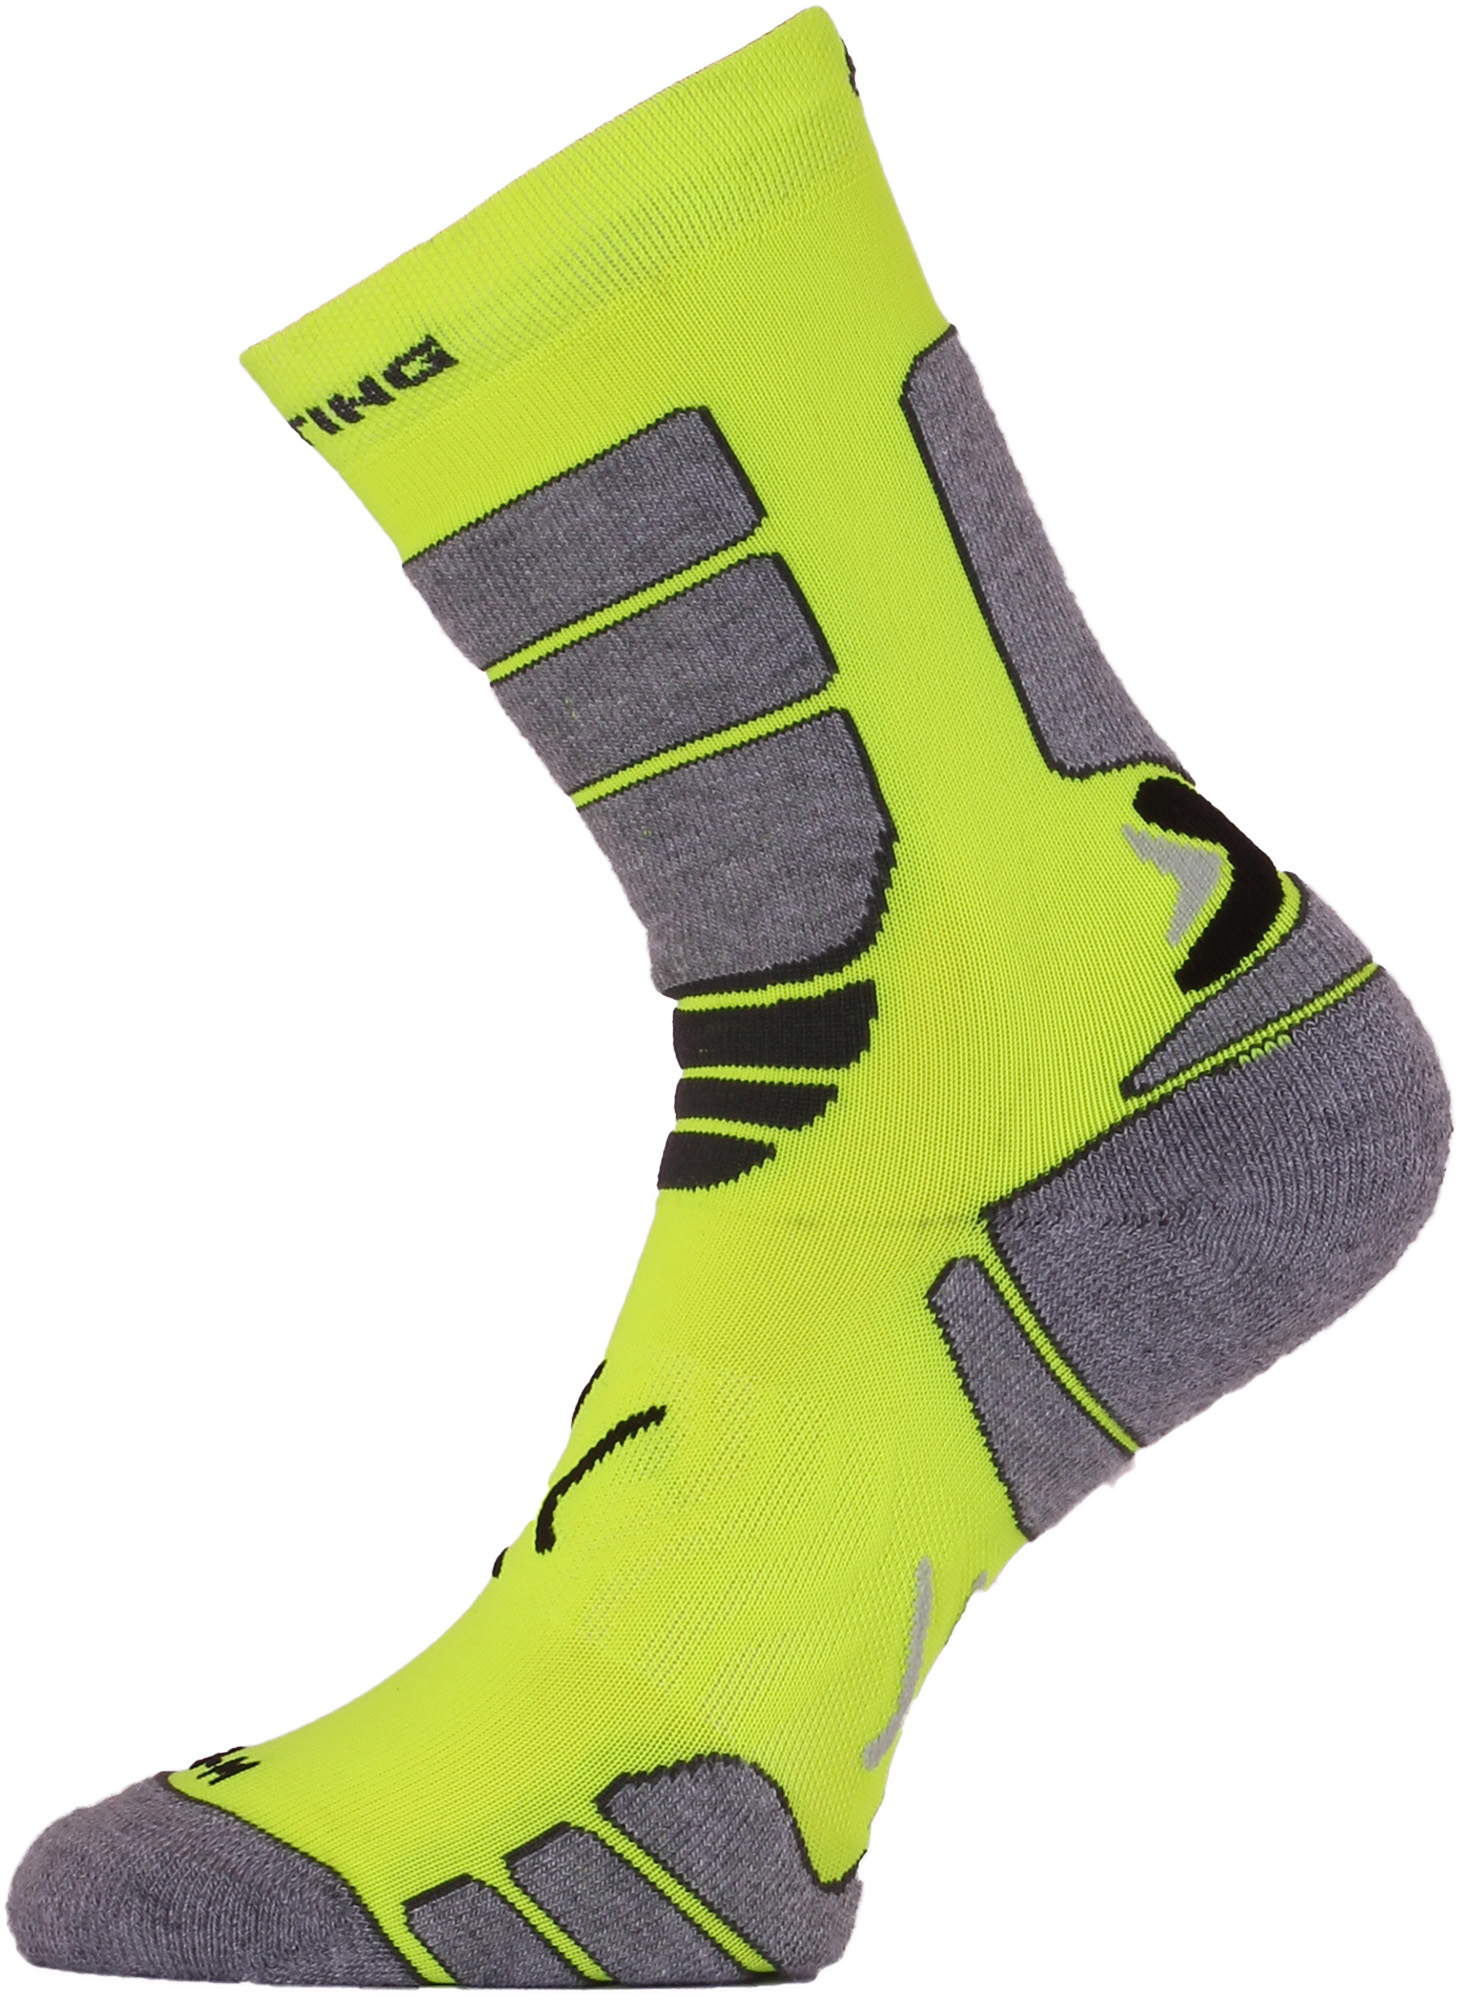 Lasting ILR 108 žlutá Středně dlouhá inlinová ponožka Velikost: (34-37) S ponožky